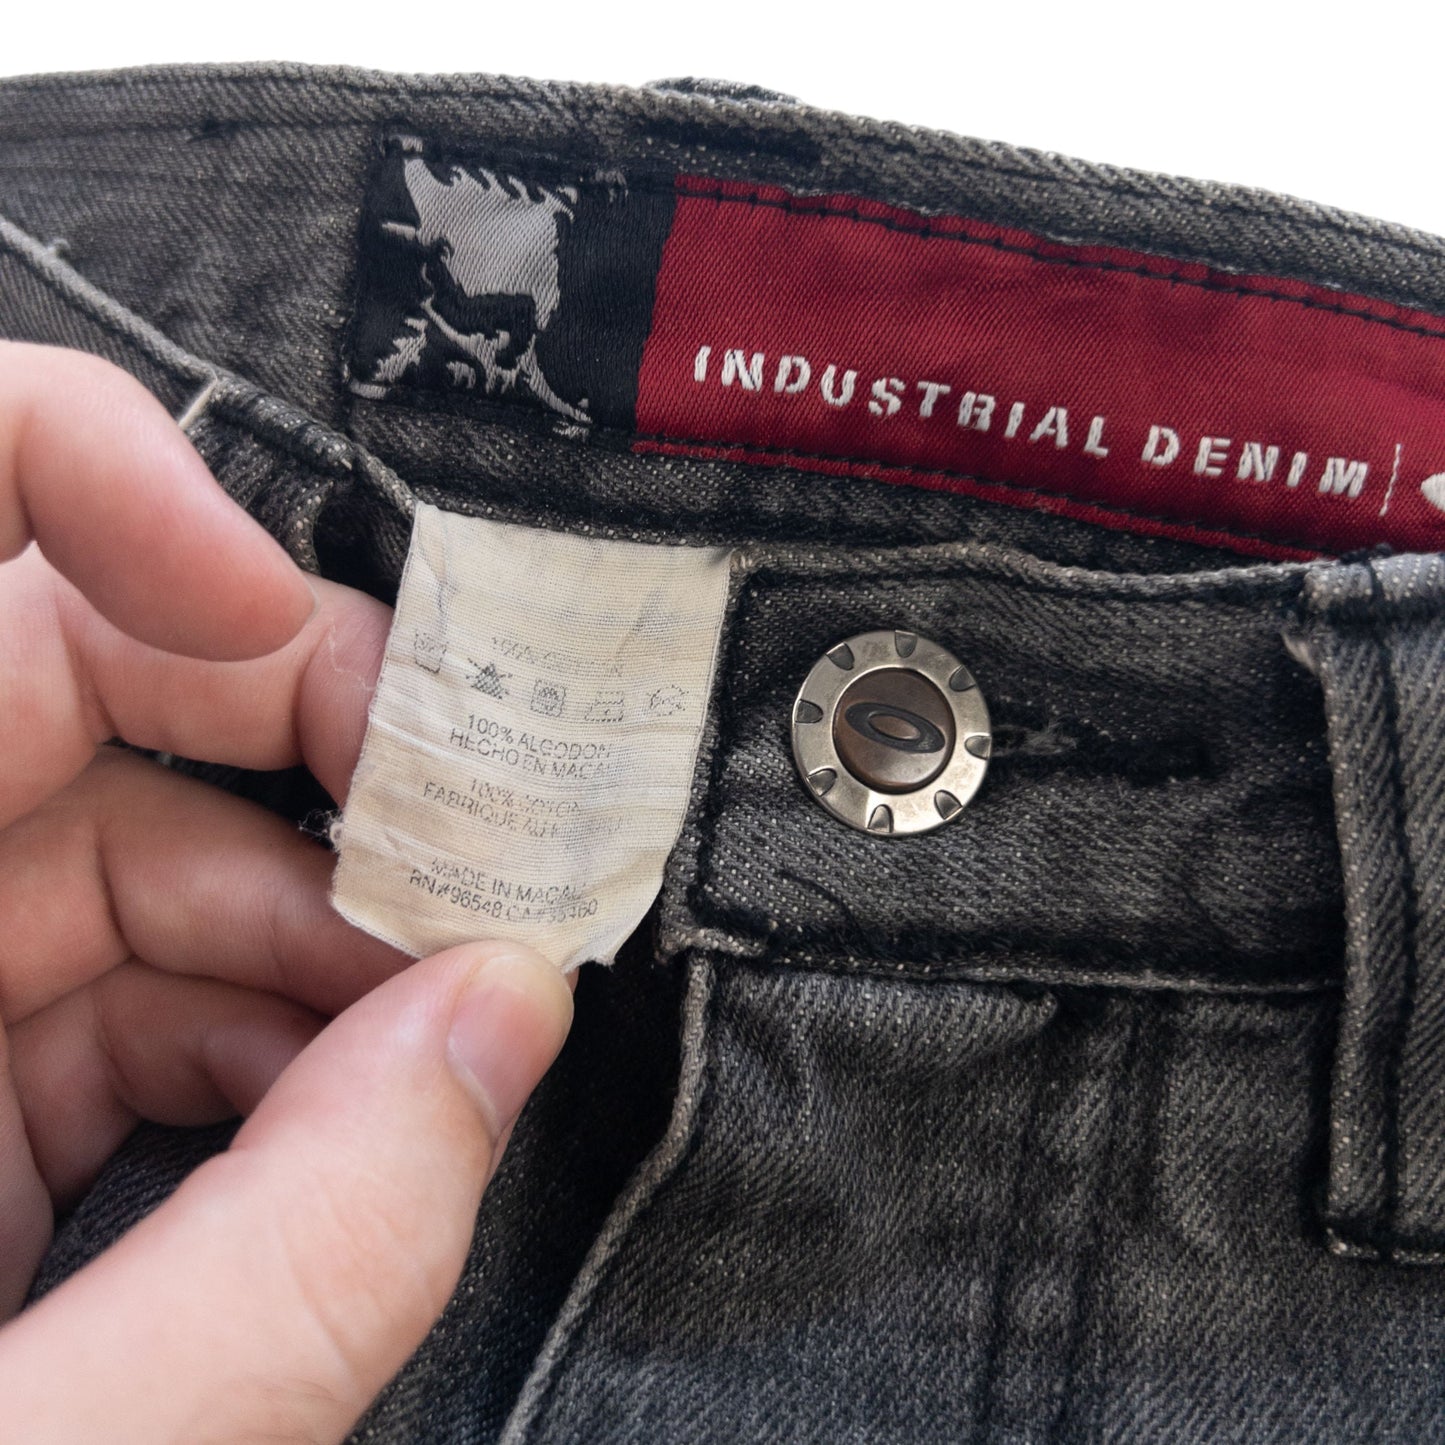 Vintage Oakley Industrial Denim Jeans Size W29